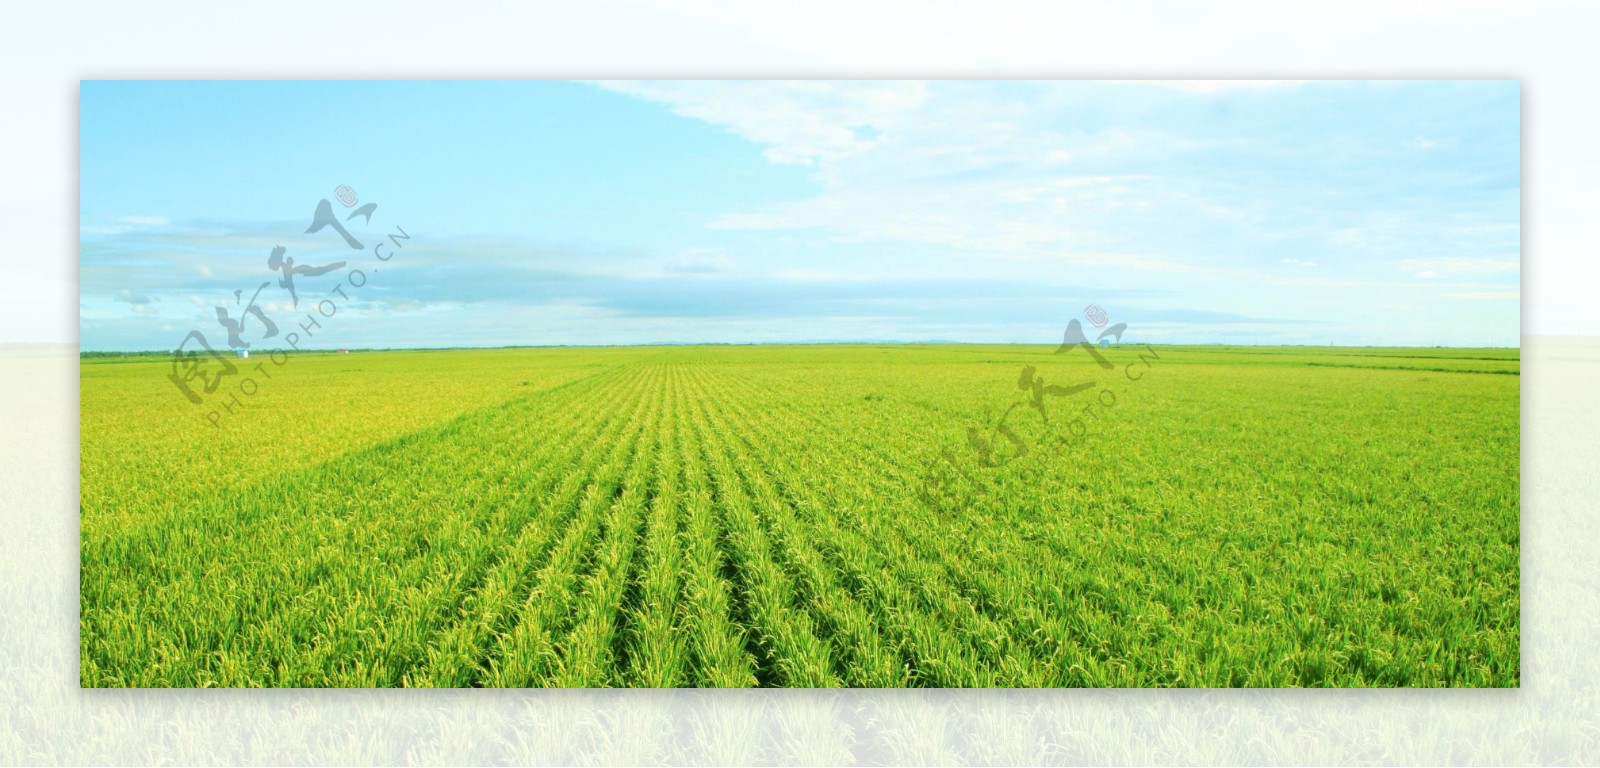 一望无垠的麦田稻田图片